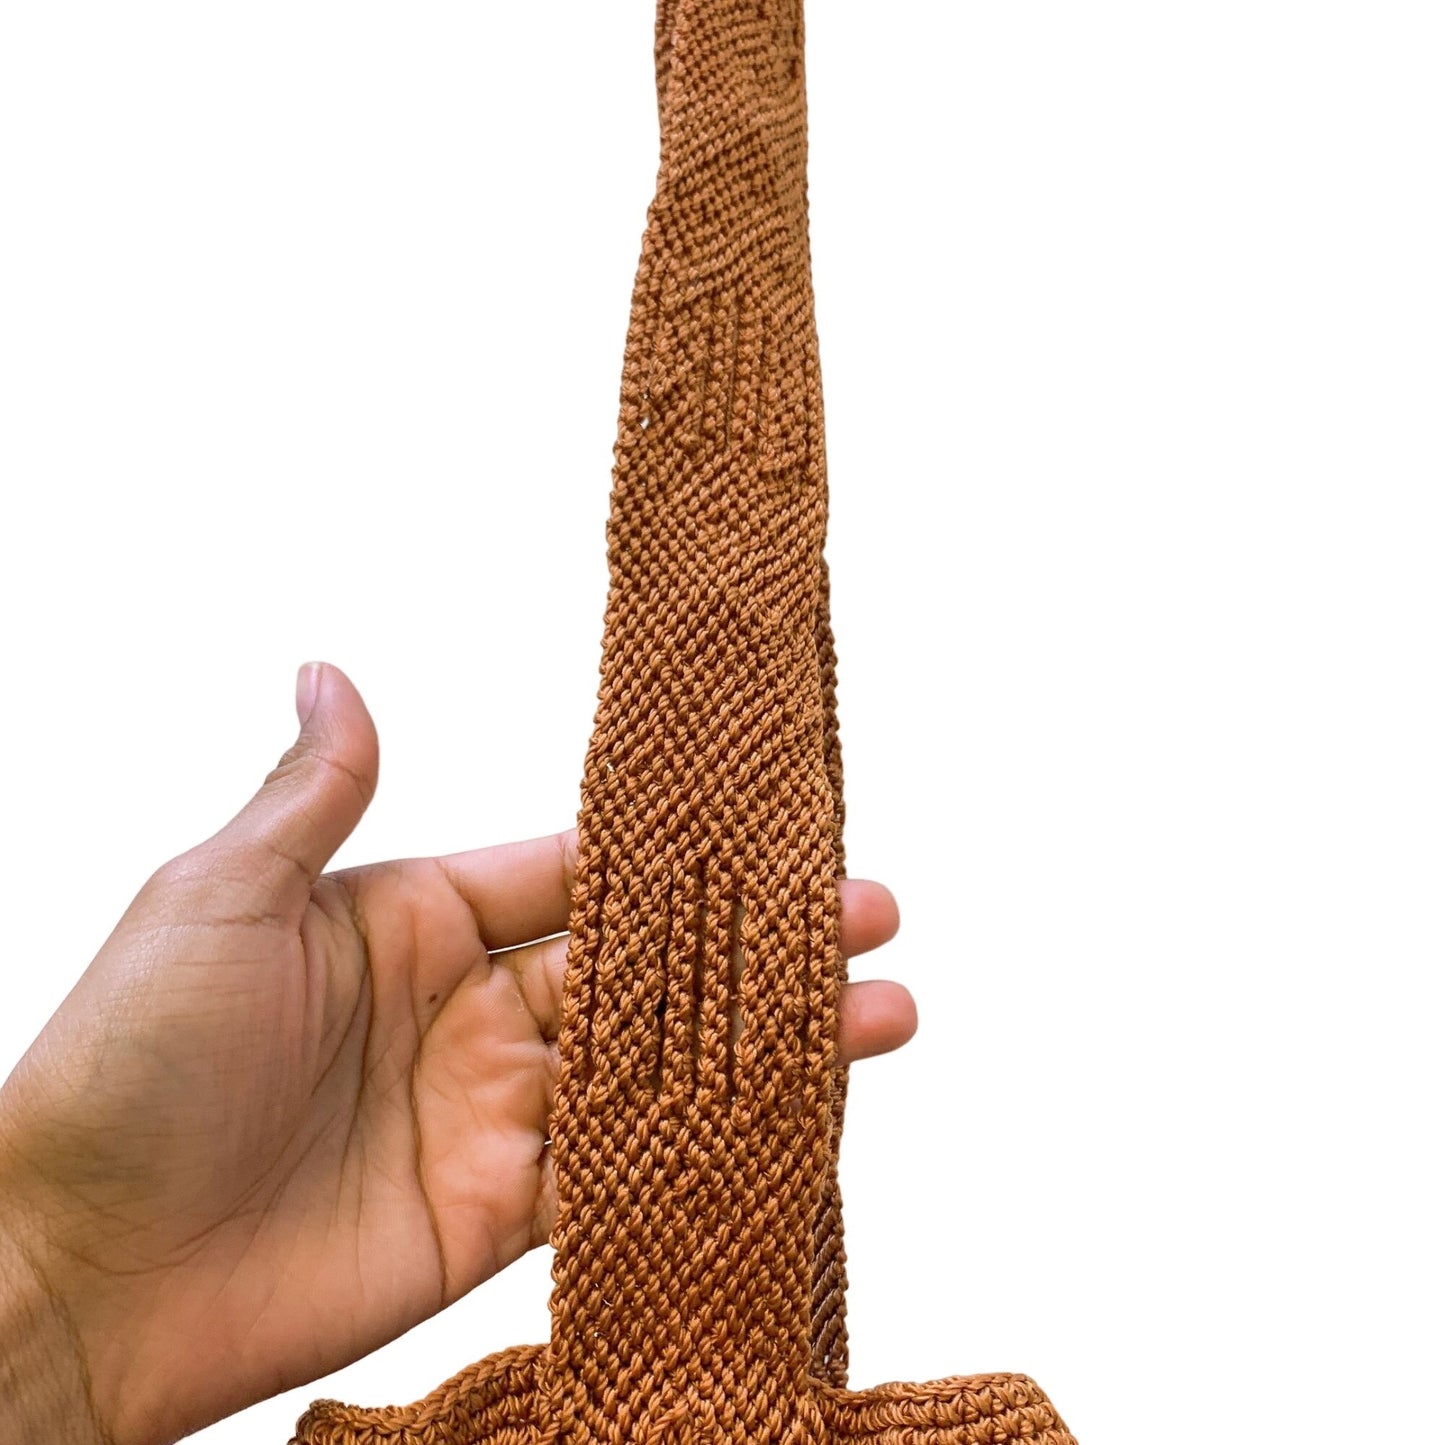 *Morral Maya Copper Crochet Crossbody Medium